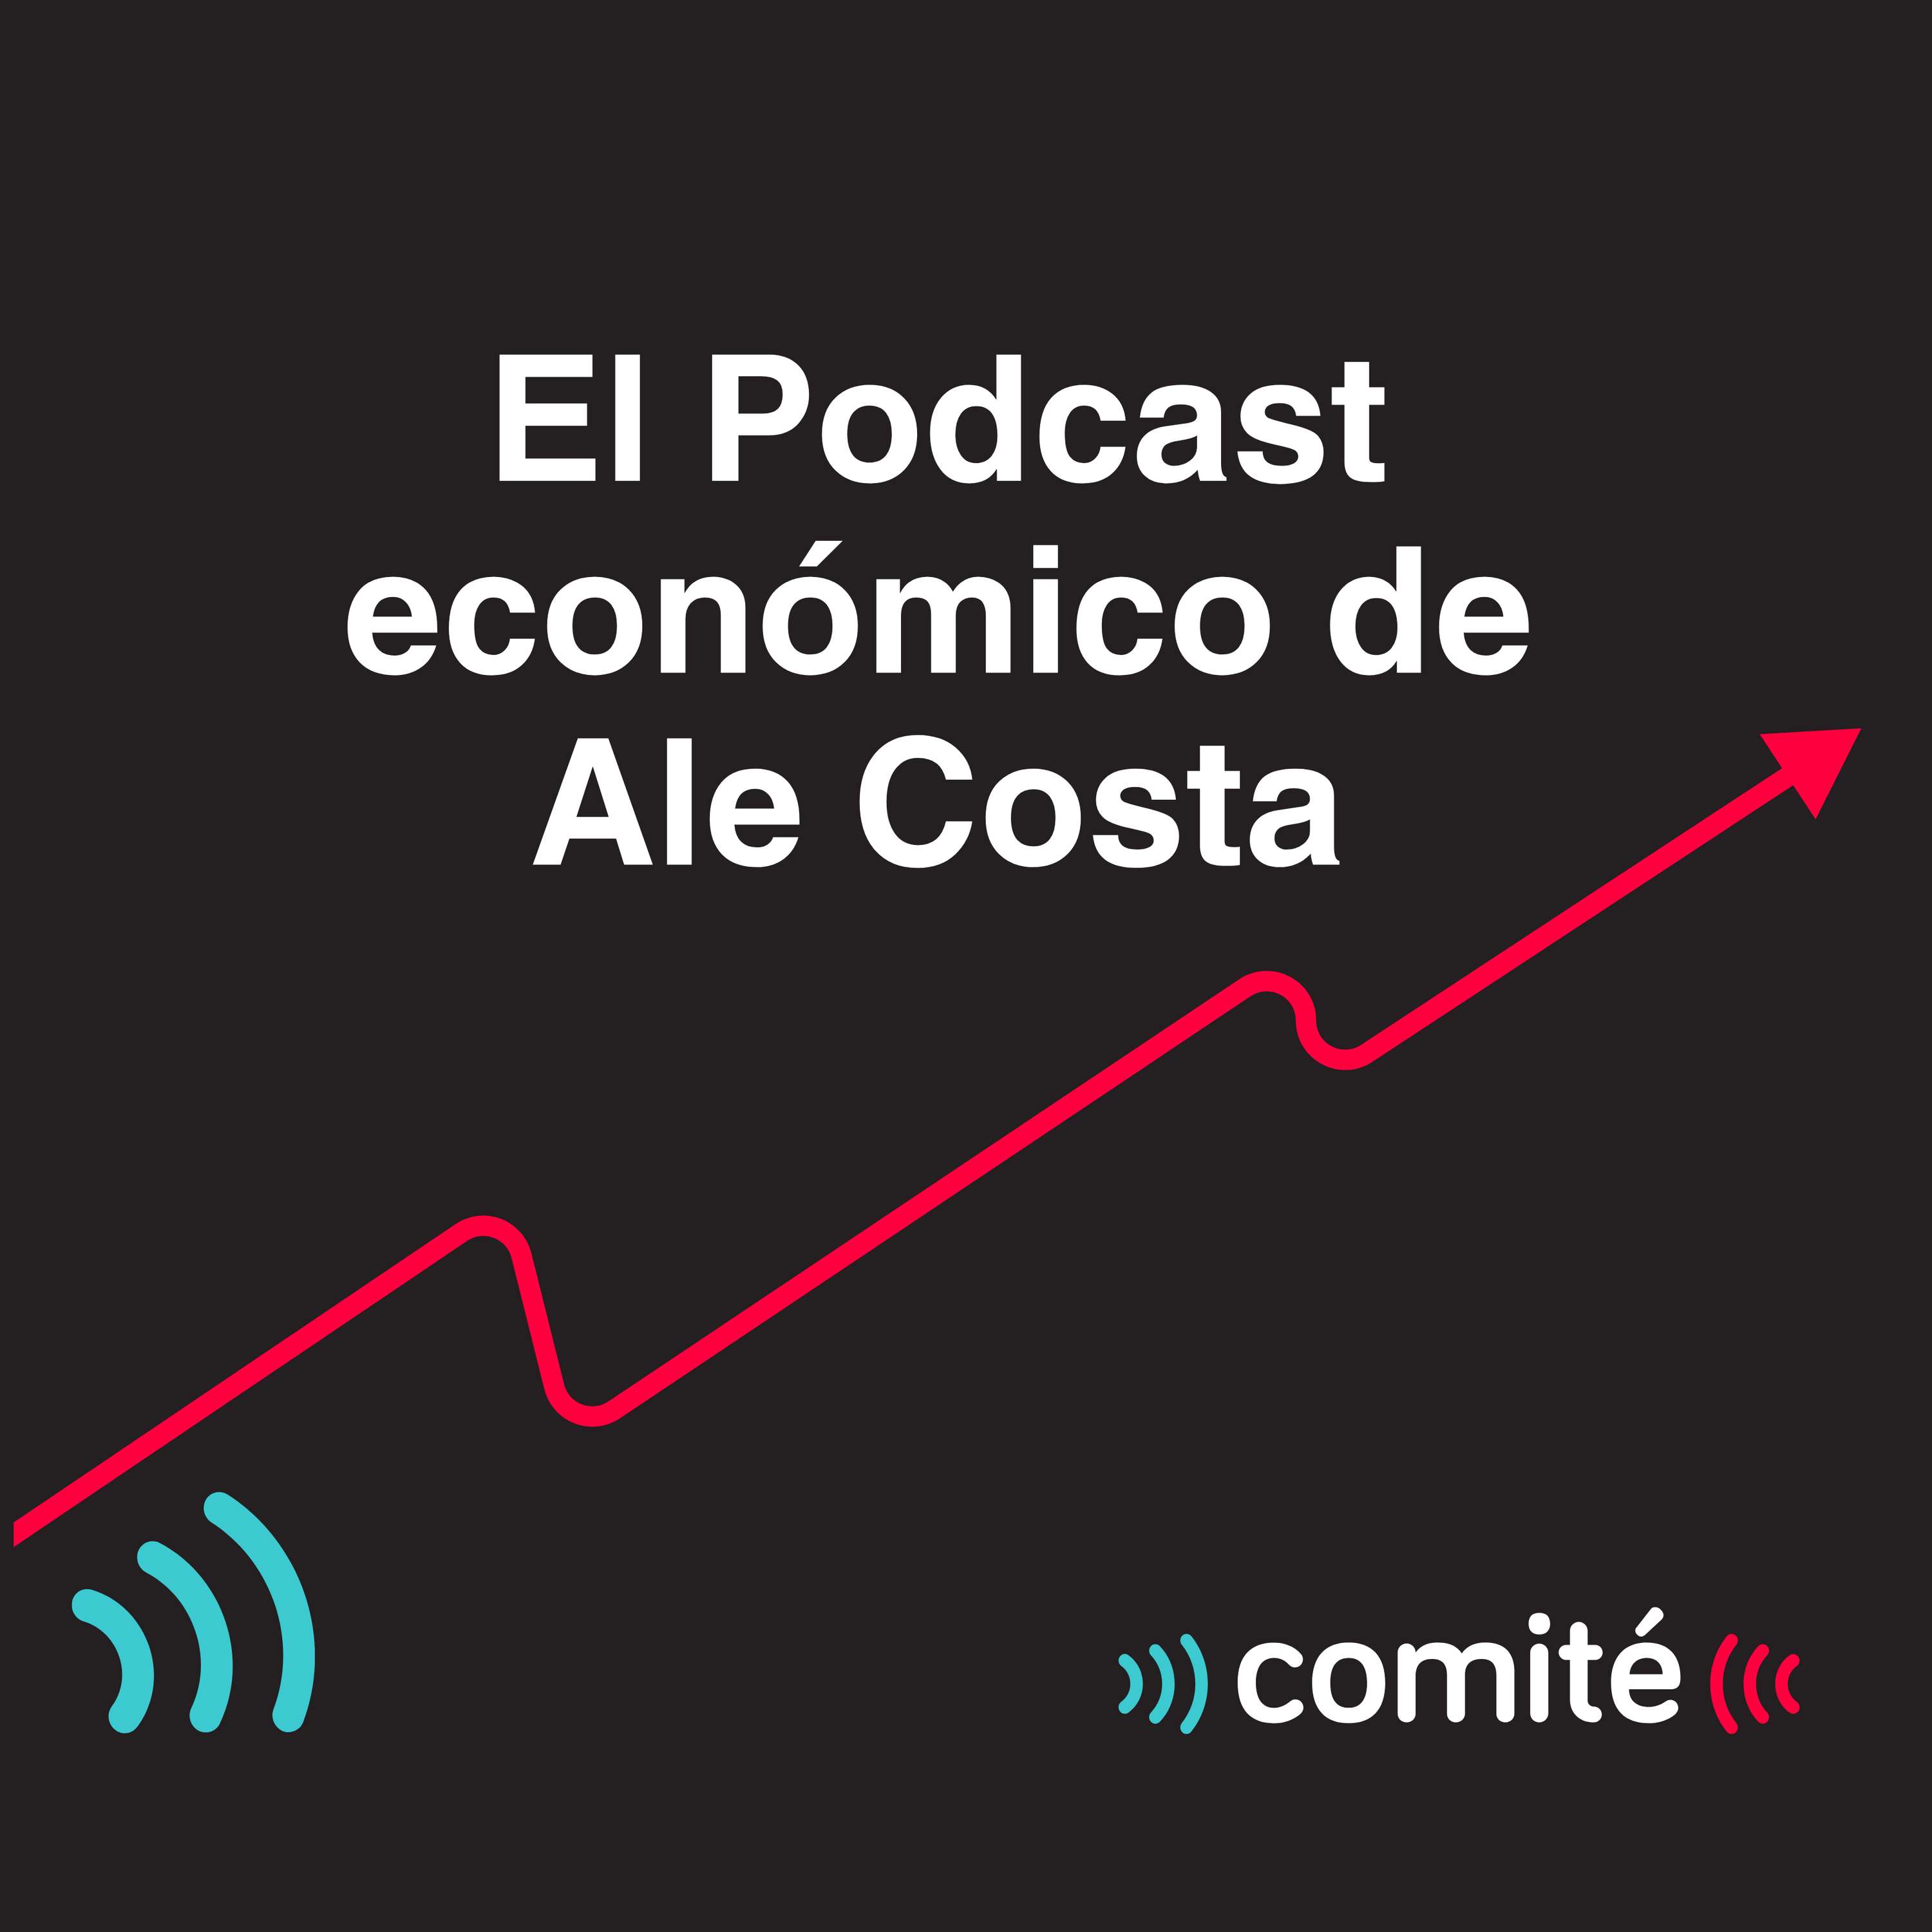 Gobierno promulga ley que permite retiro de 4 UIT de las AFP | El Podcast económico de Ale Costa